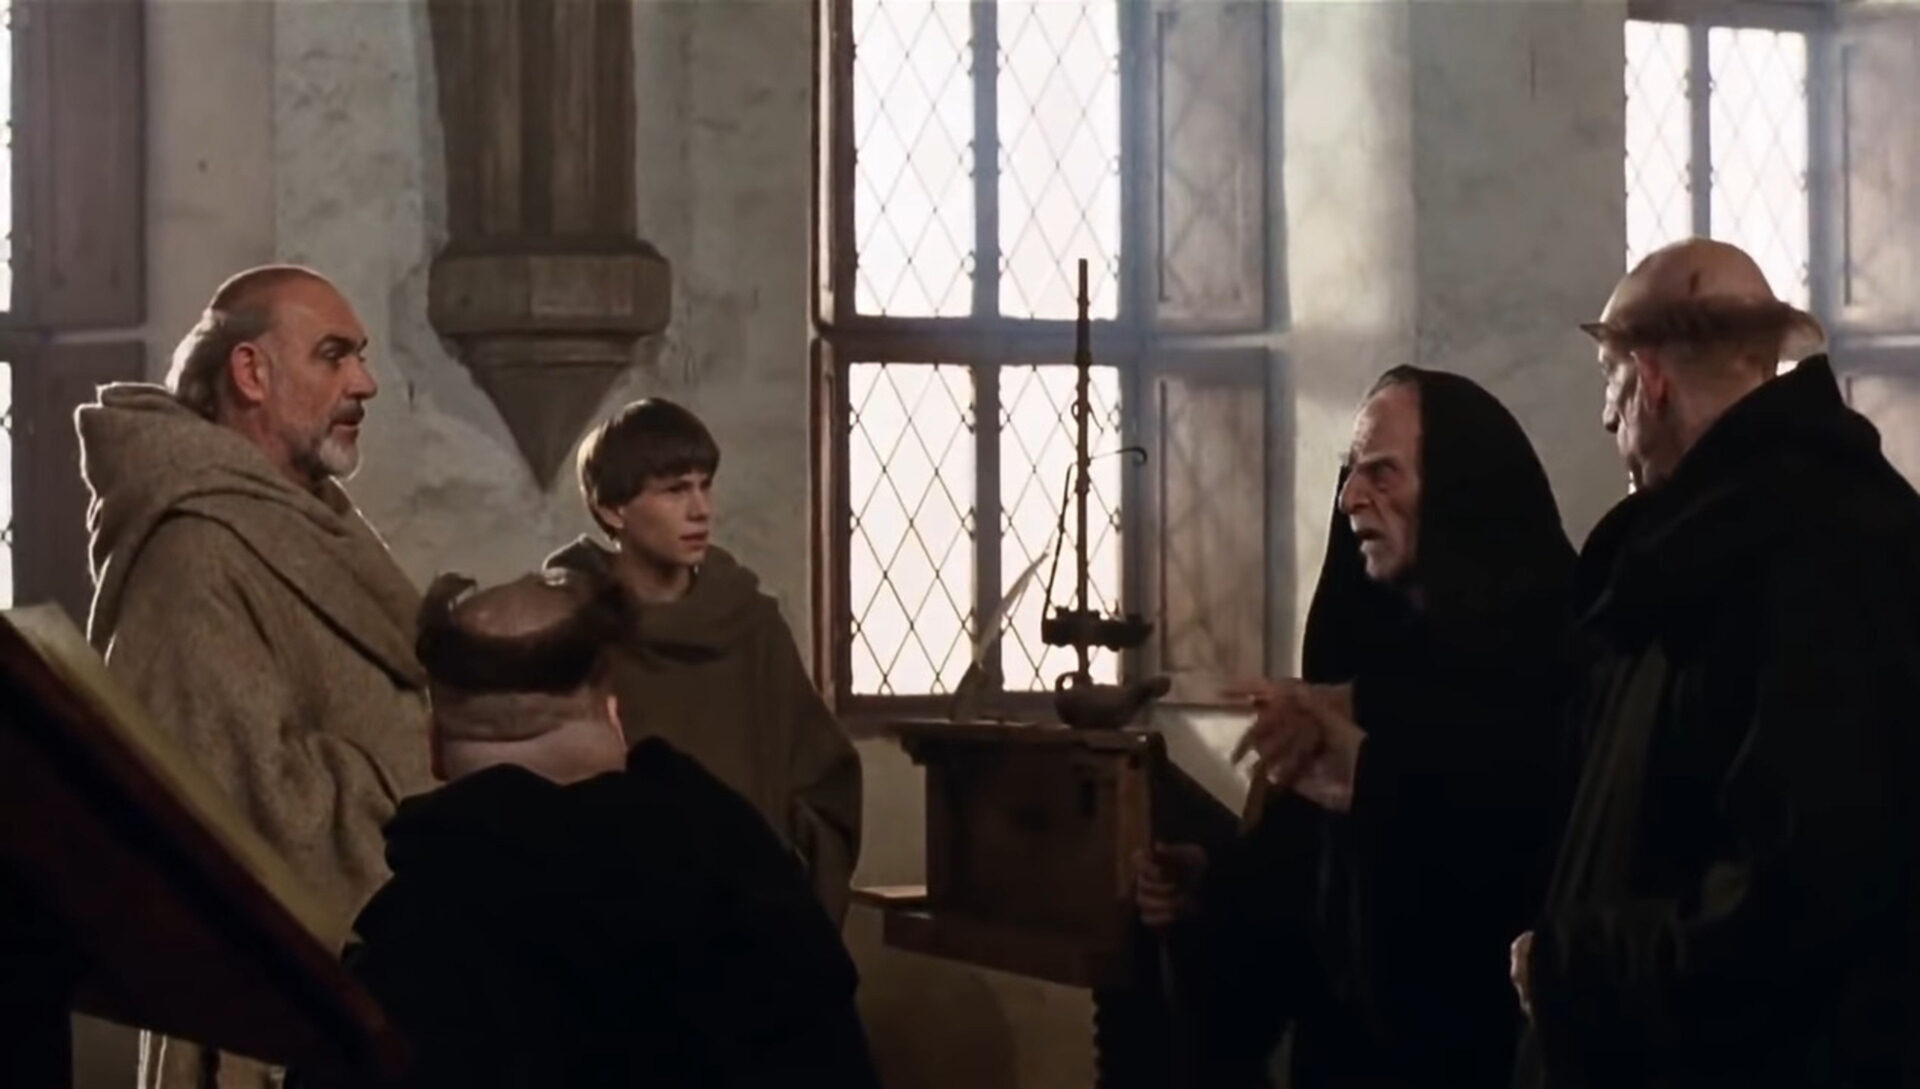 Disput über das Lachen zwischen William von Baskerville (Sean Connery, li.) und dem alten Jorge von Burgos (Fjodor Schaljapin, 2.v.re.). Screenshot «Der Name der Rose»